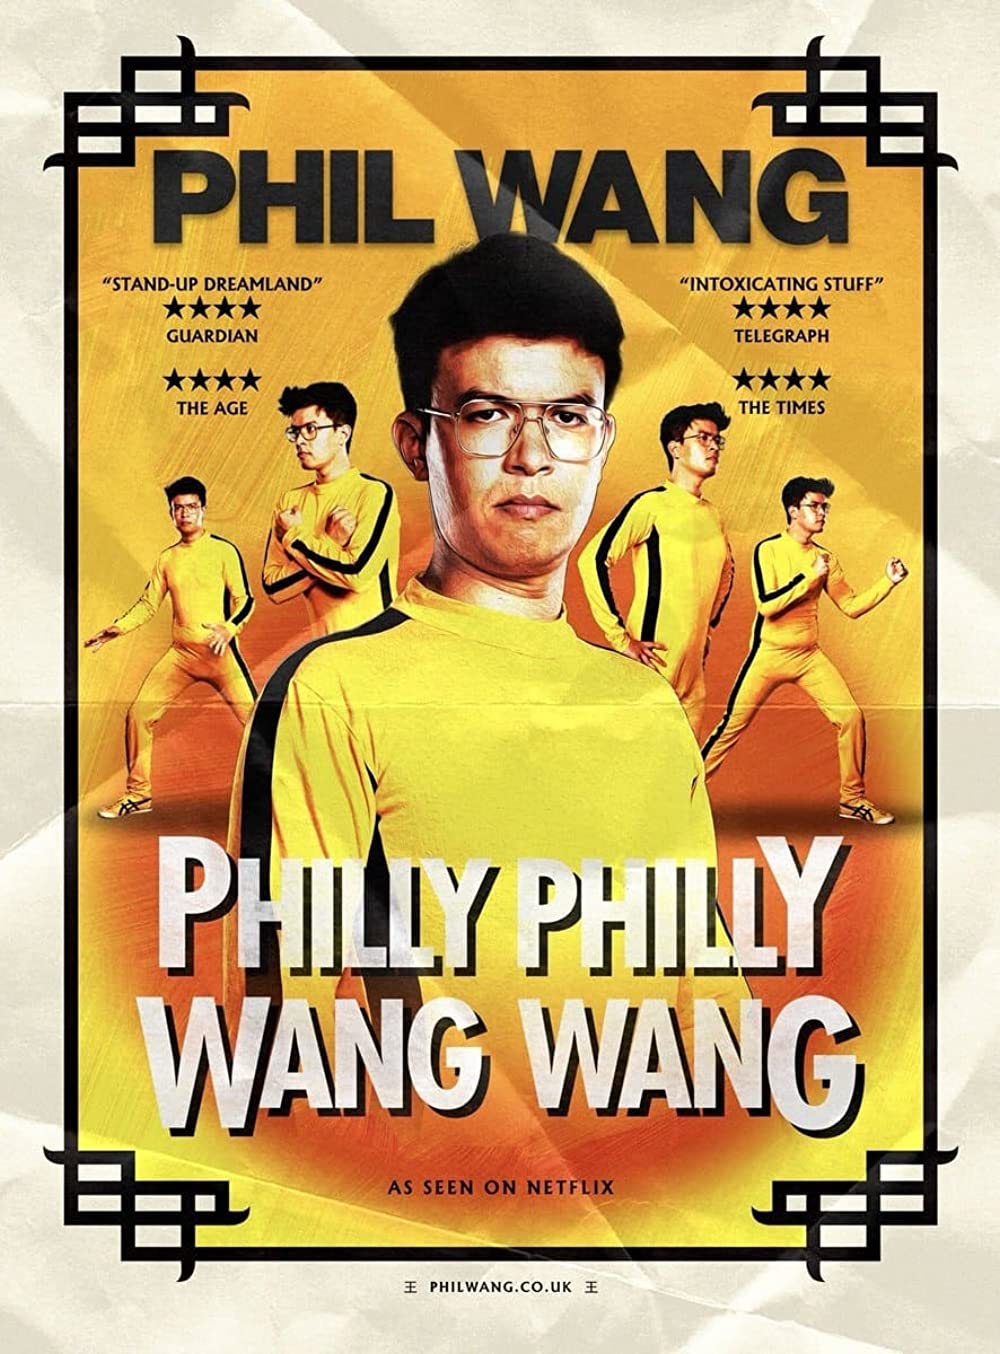 ดูหนังออนไลน์ฟรี Phil Wang Philly Philly Wang Wang (2021) ฟิล หวาง ฟิลลี่ ฟิลลี่ หวางมาแล้ว